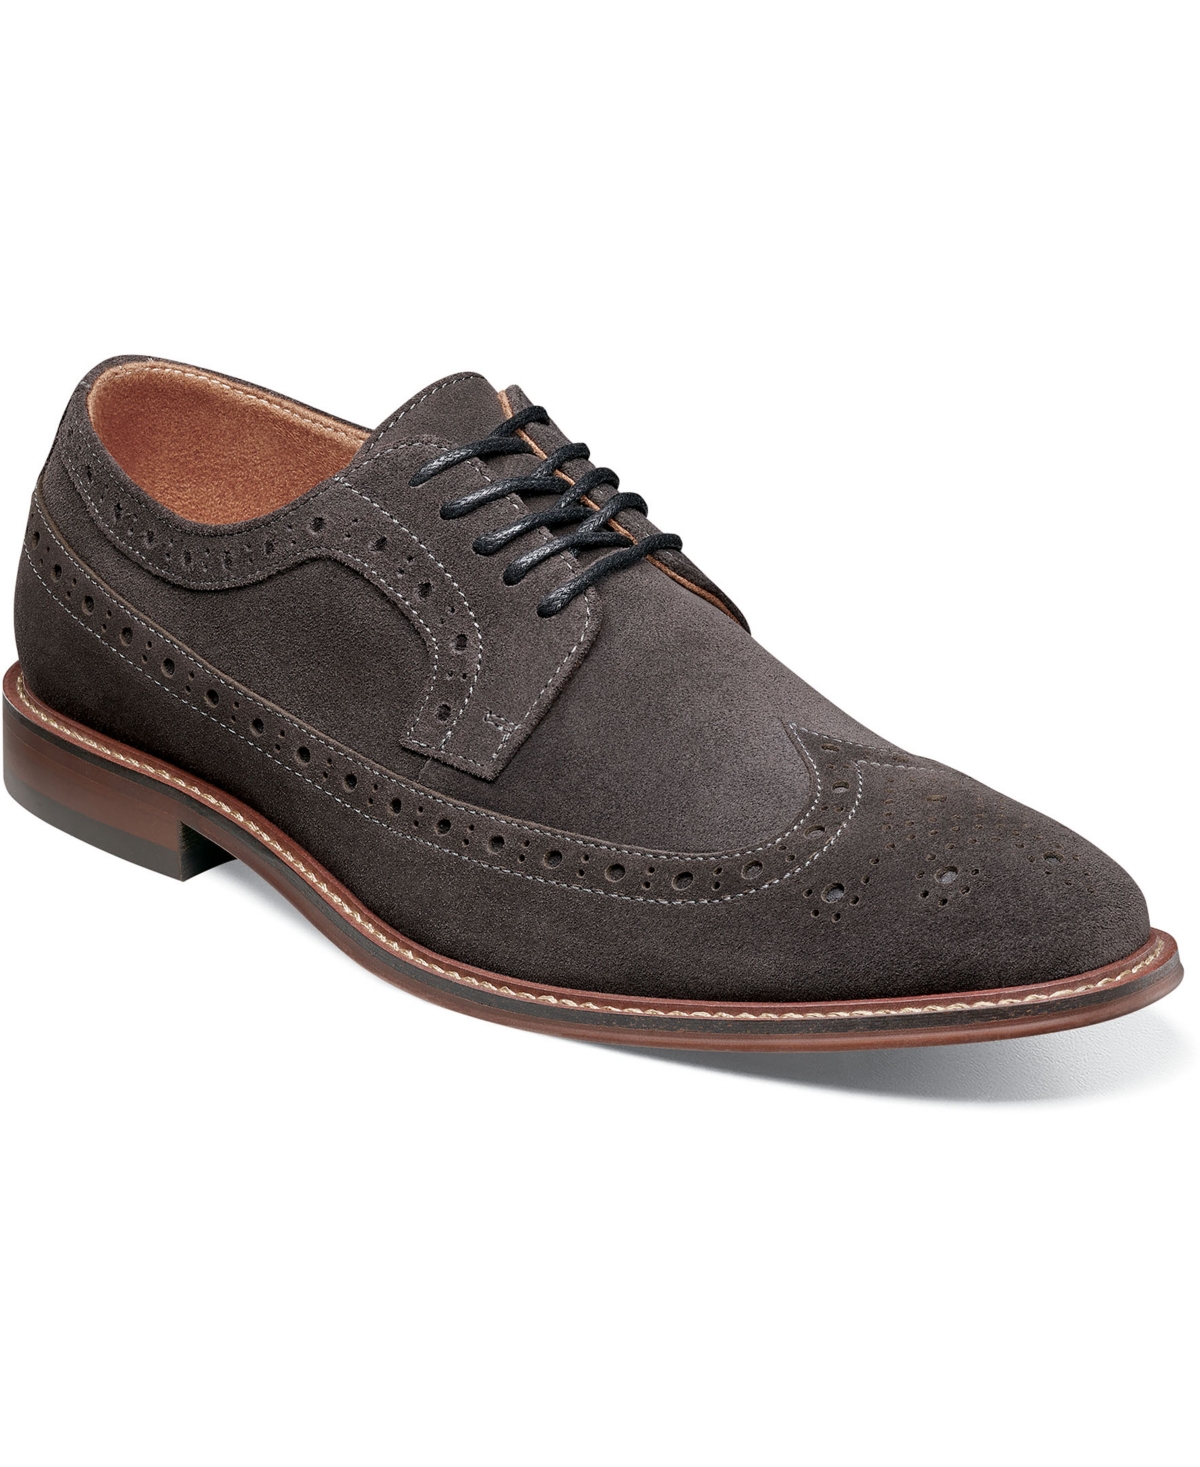 Men's Marligan Wingtip Oxford Shoes - Dark Gray